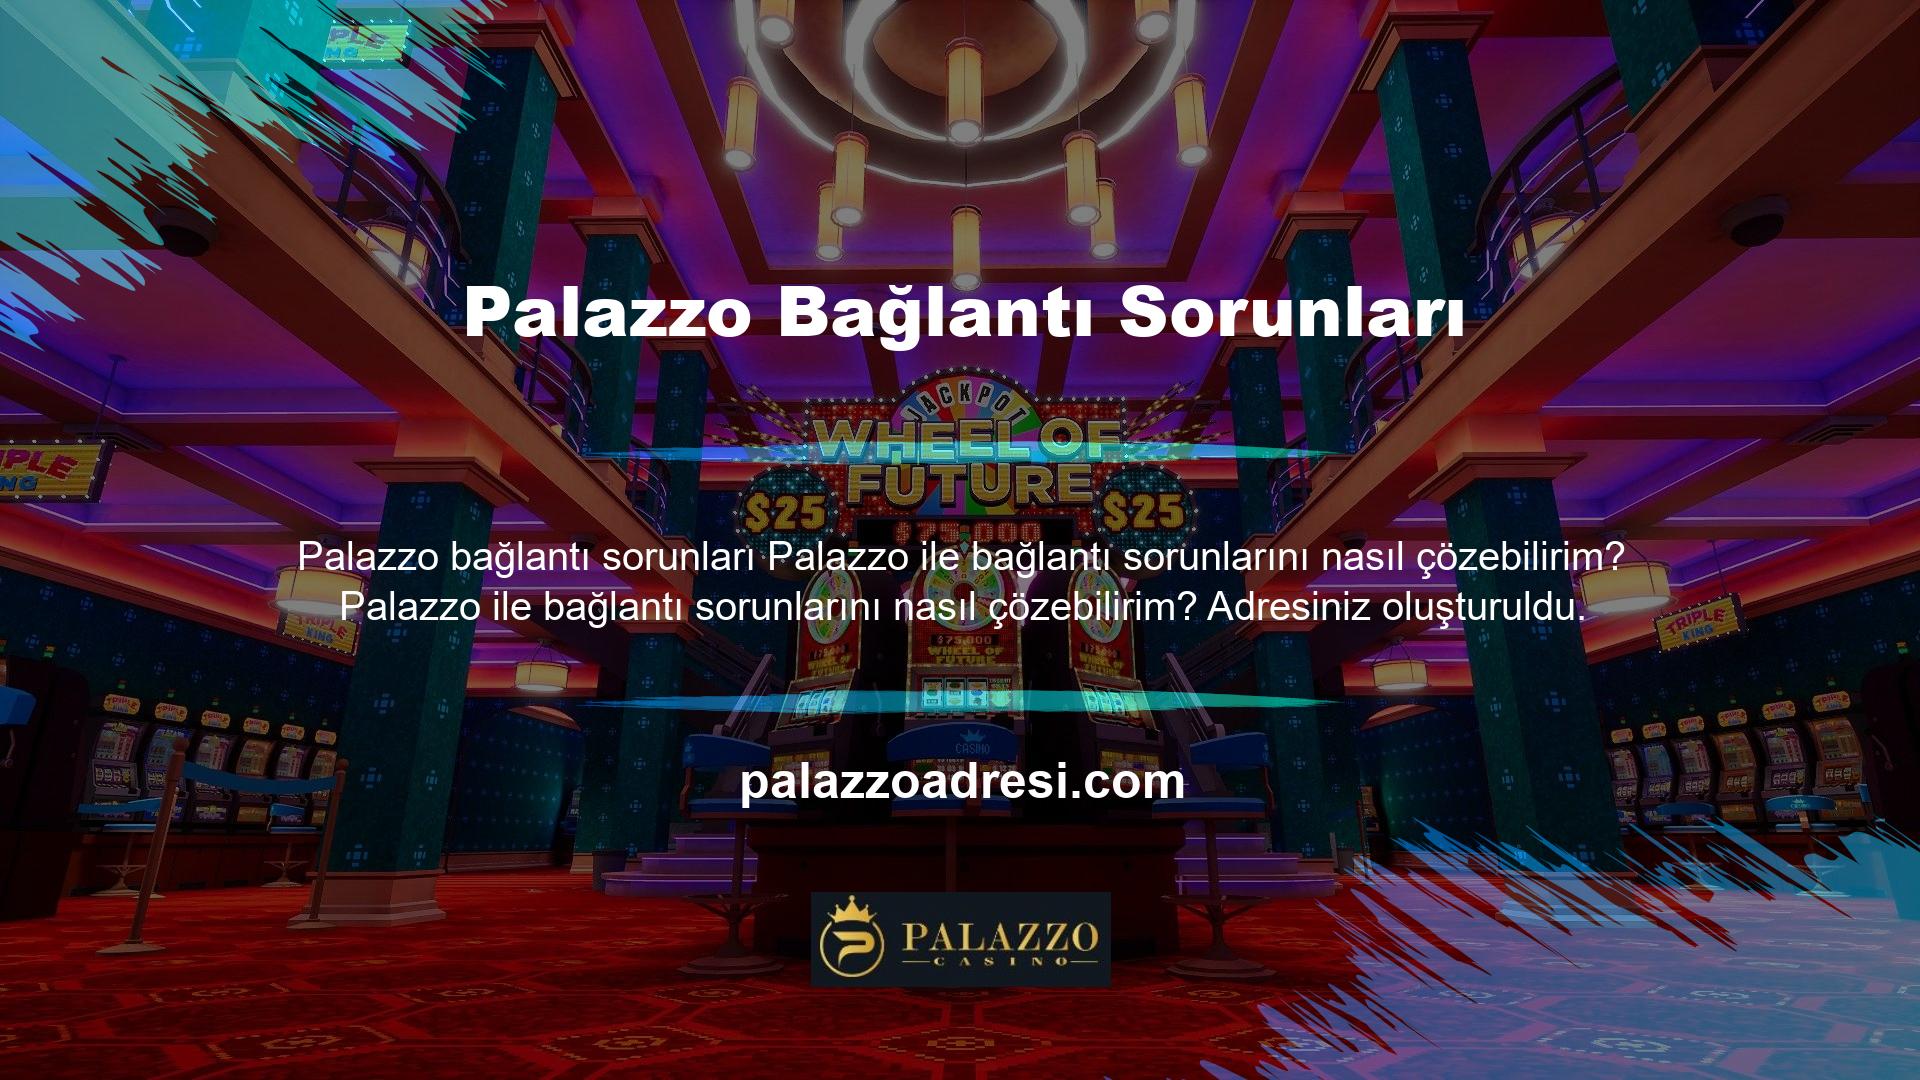 Bu uygulama aynı zamanda Palazzo web sitesinde de yayınlanmakta ve sorunu çözmek için yeni bağlantılar tanımlamaktadır